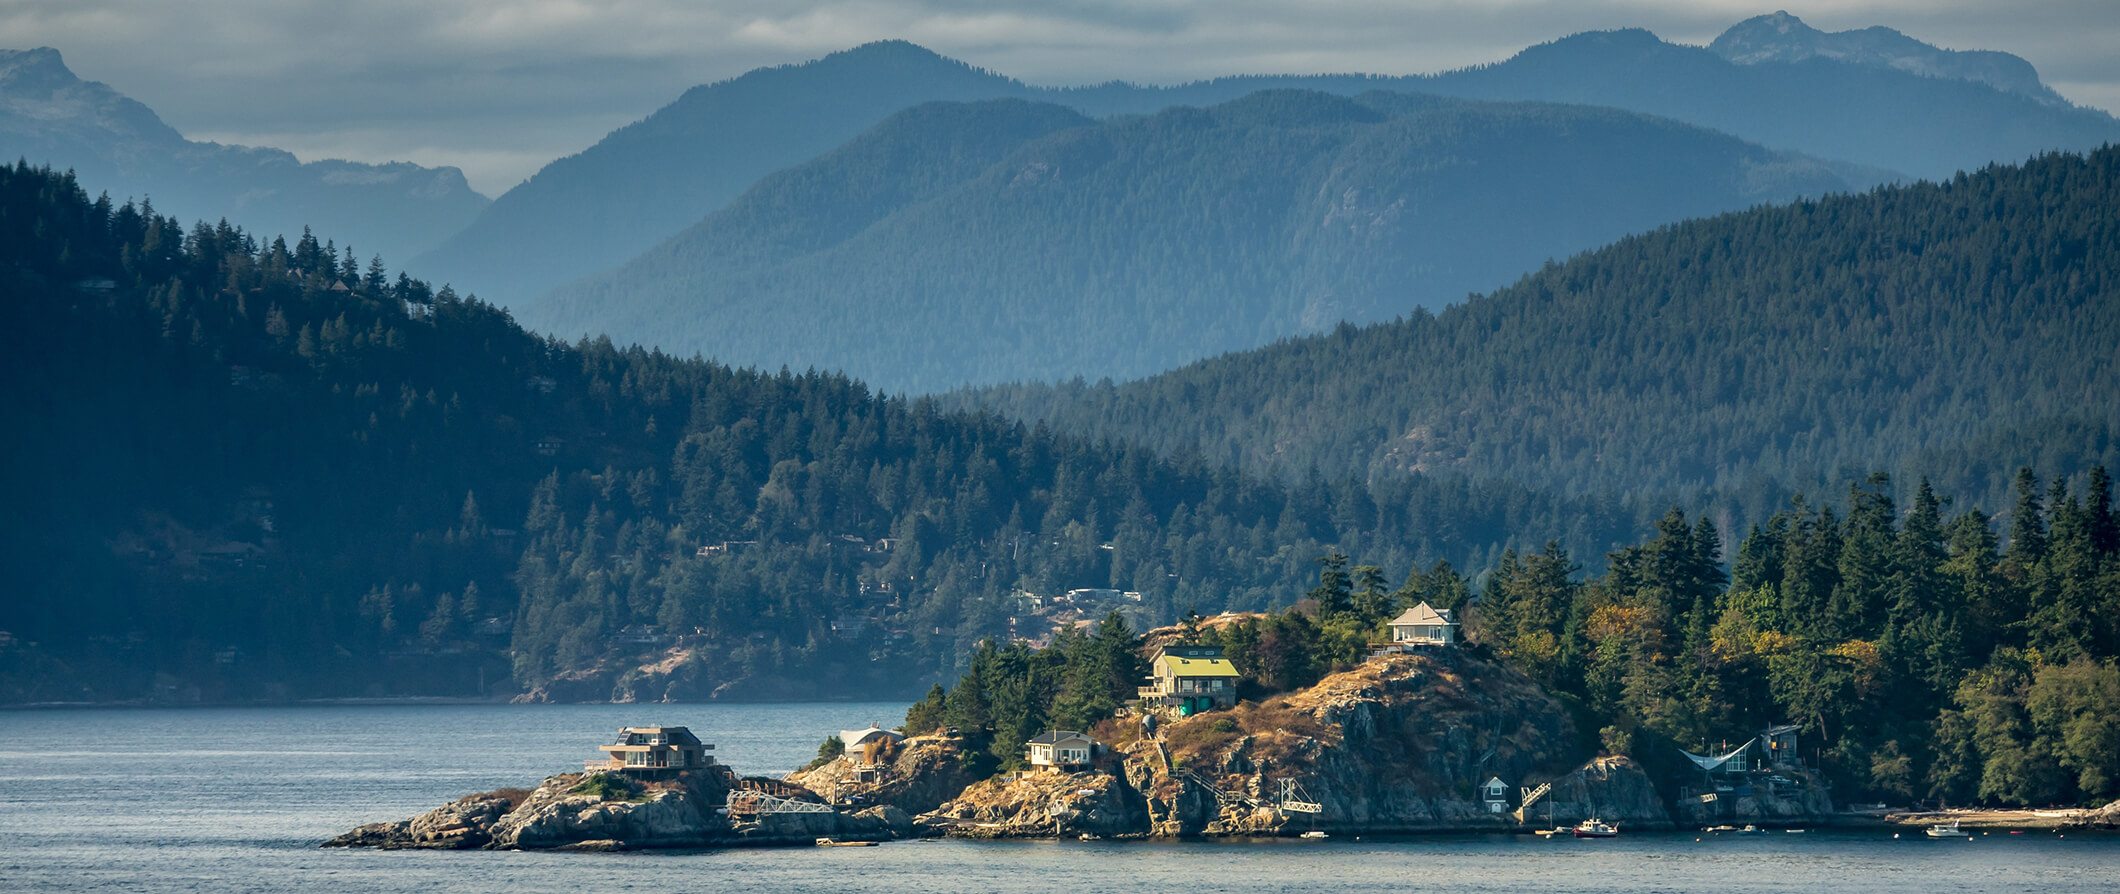 Vista da natureza magnífica e das florestas da ilha de Vancouver, Canadá